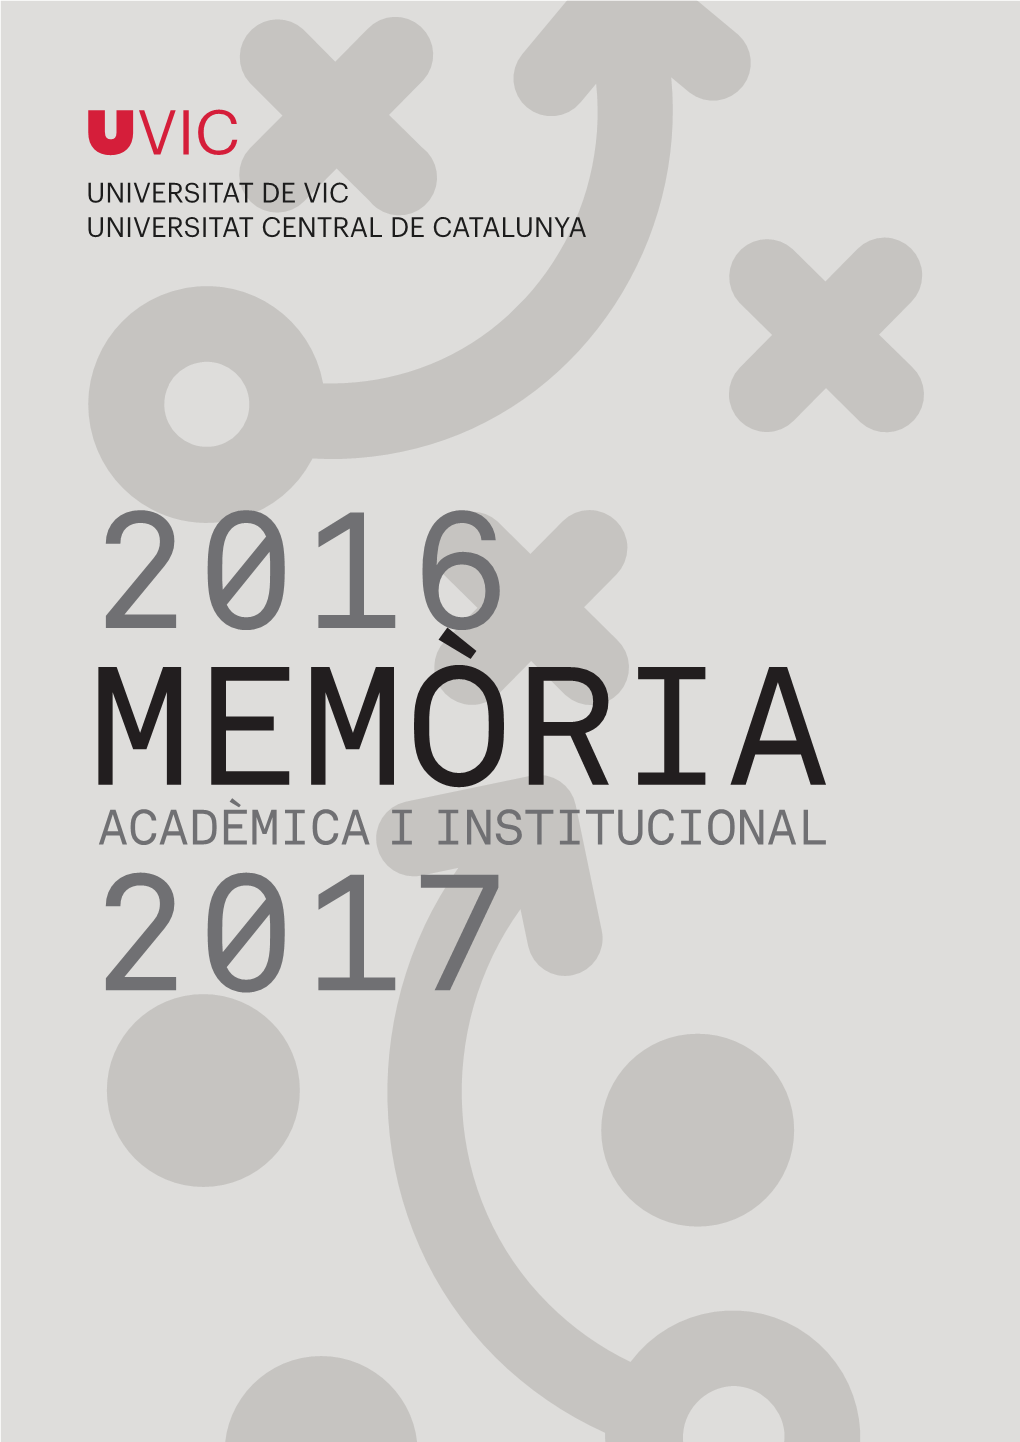 Acadèmica I Institucional 2017